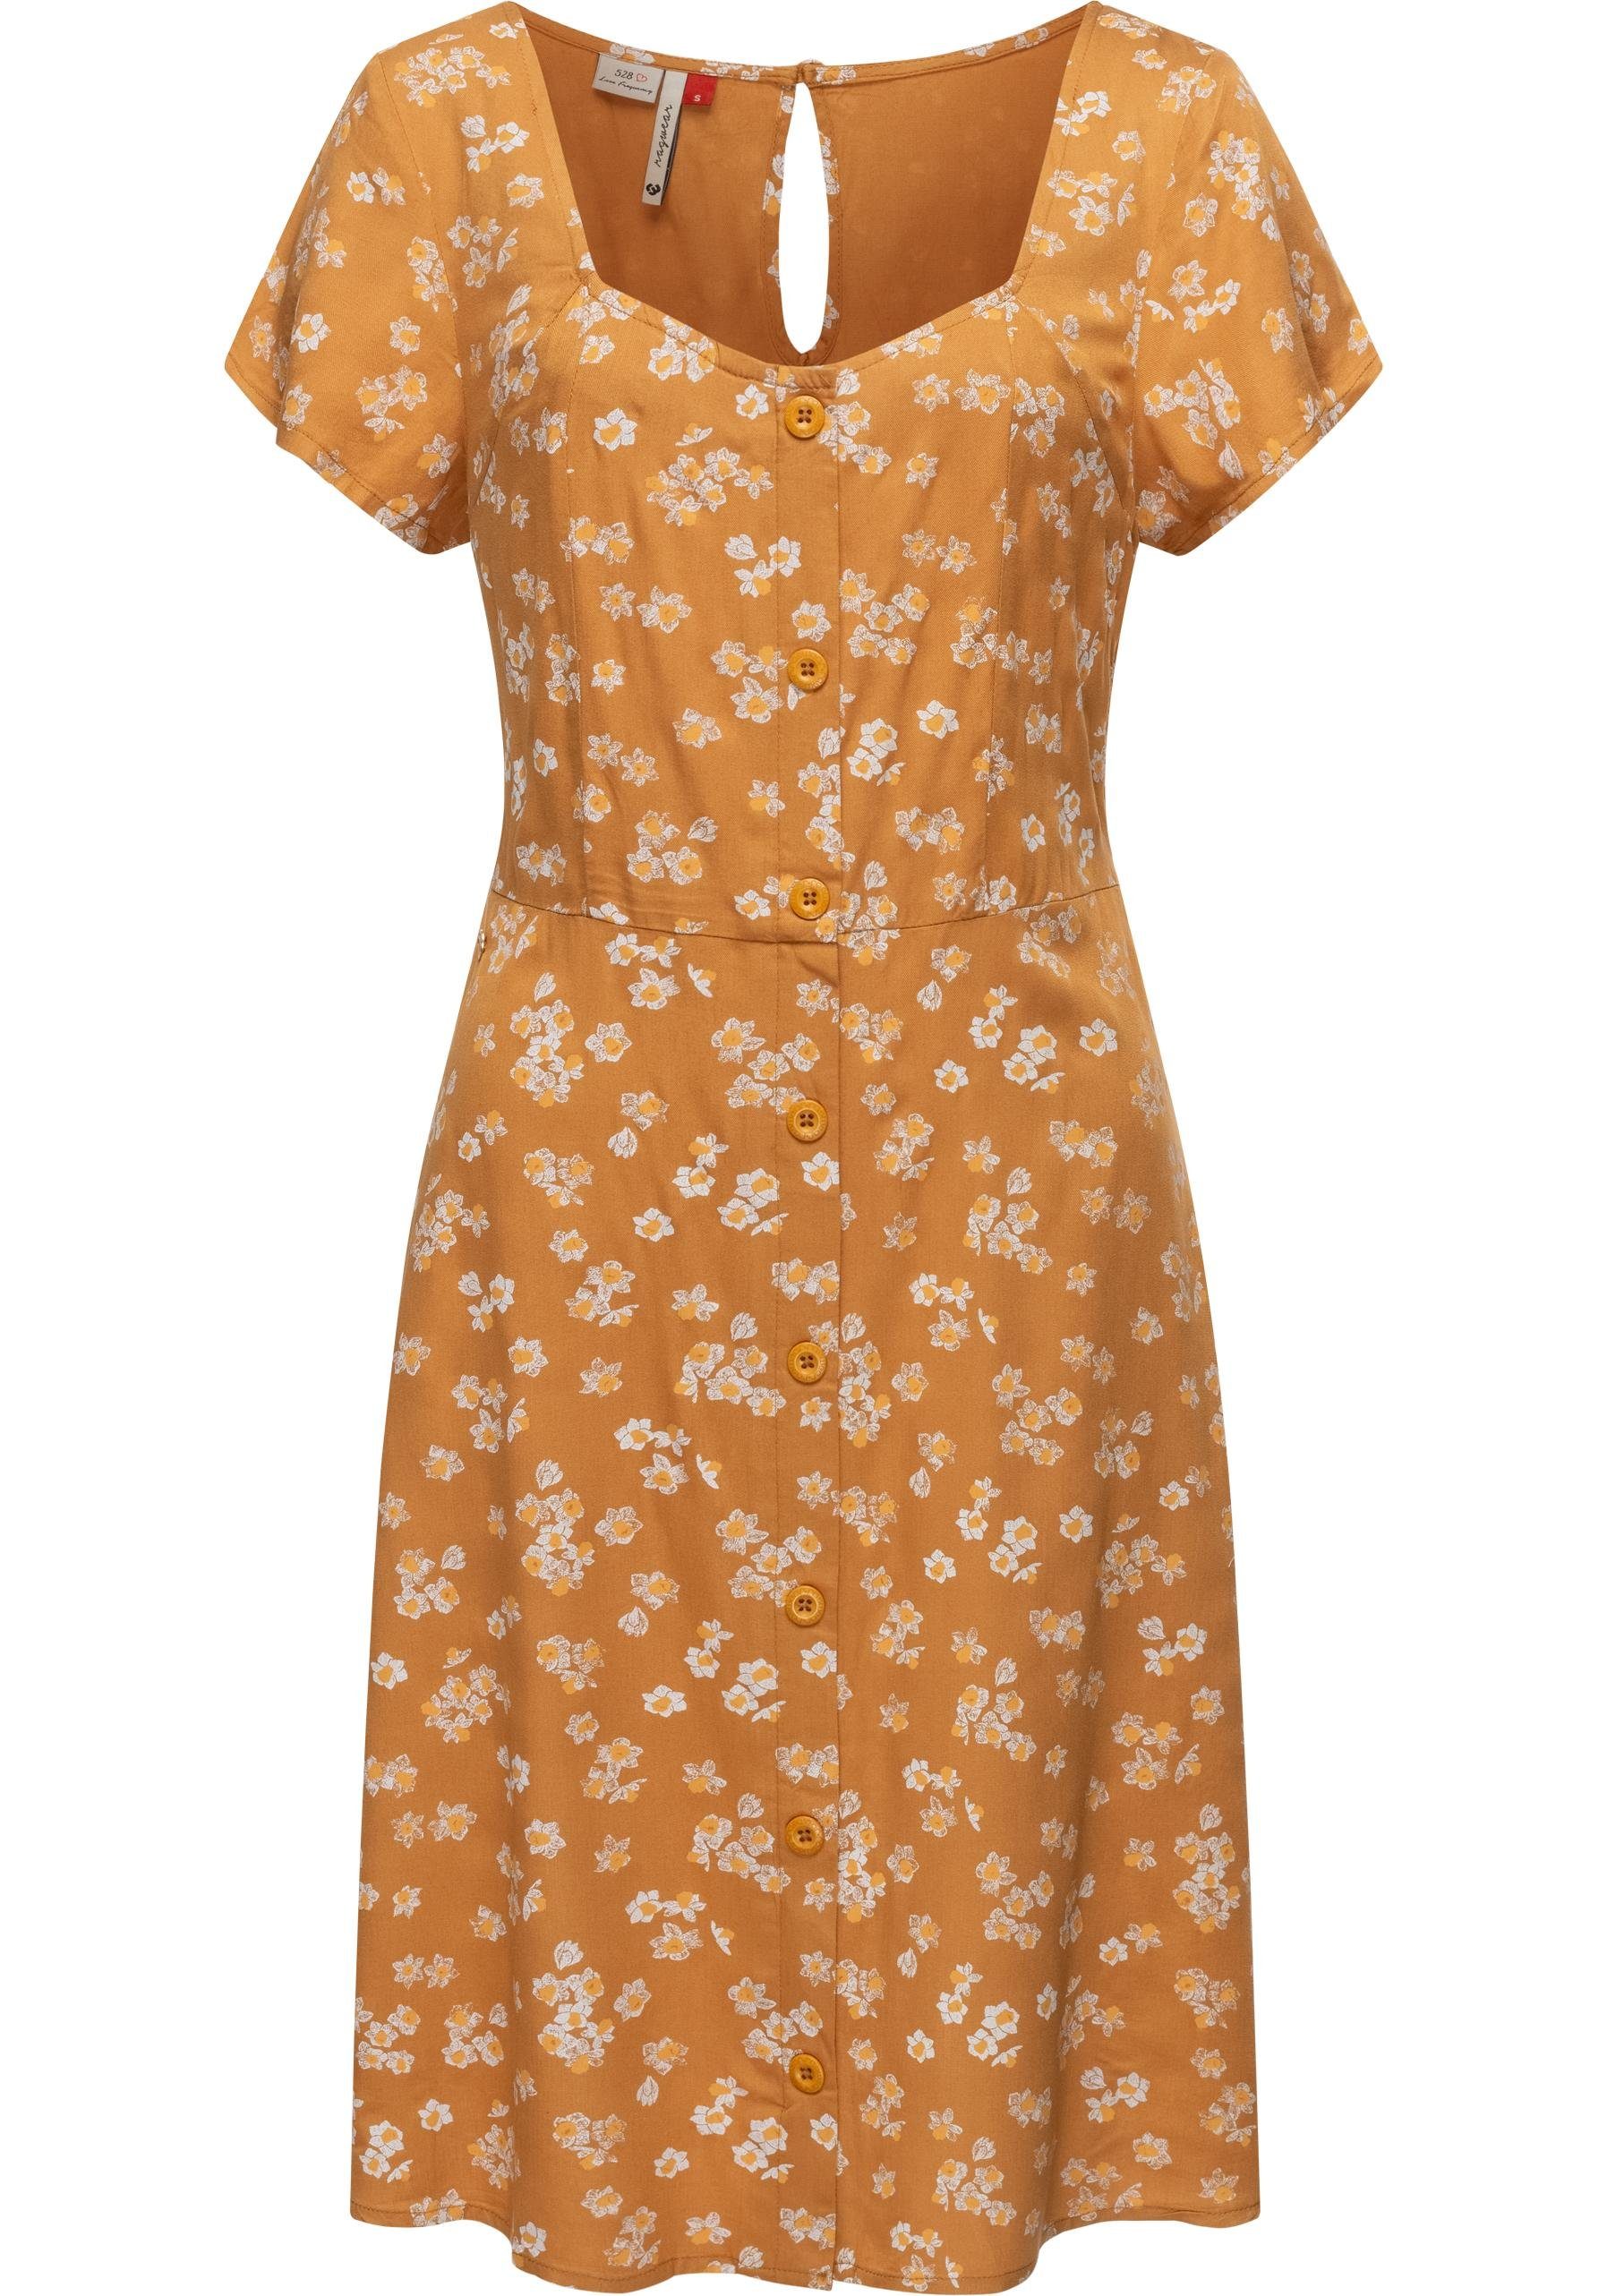 Ragwear Blusenkleid Anerley stylisches Sommerkleid mit Allover Print curry